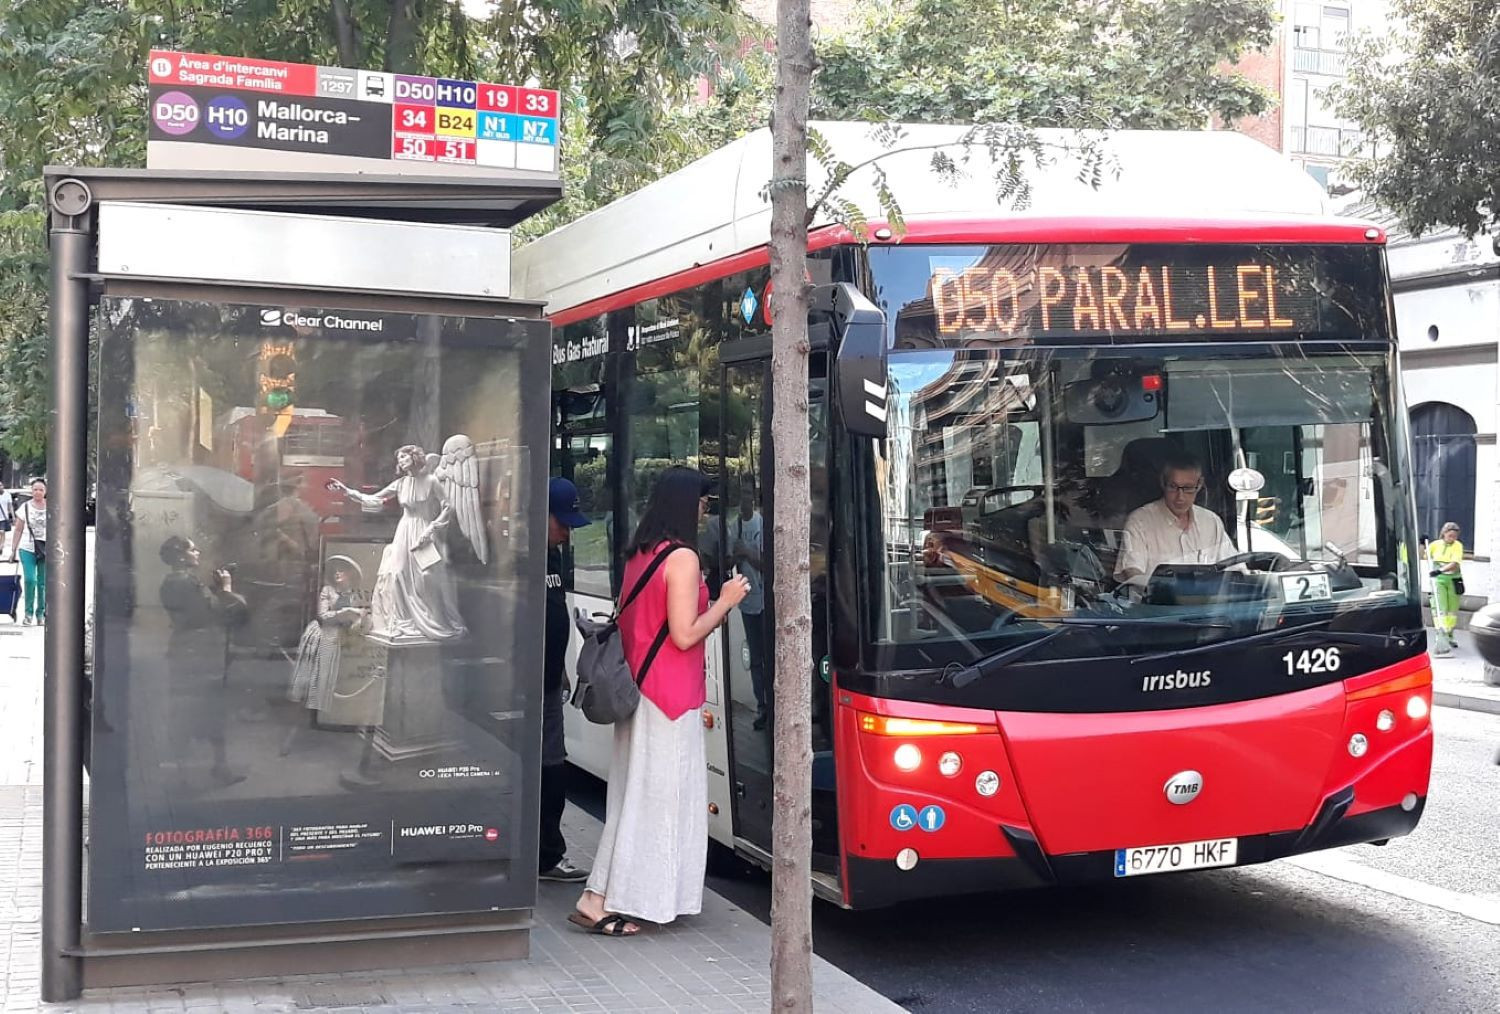 Bus de Transports Metropolitans de Barcelona (TMB)